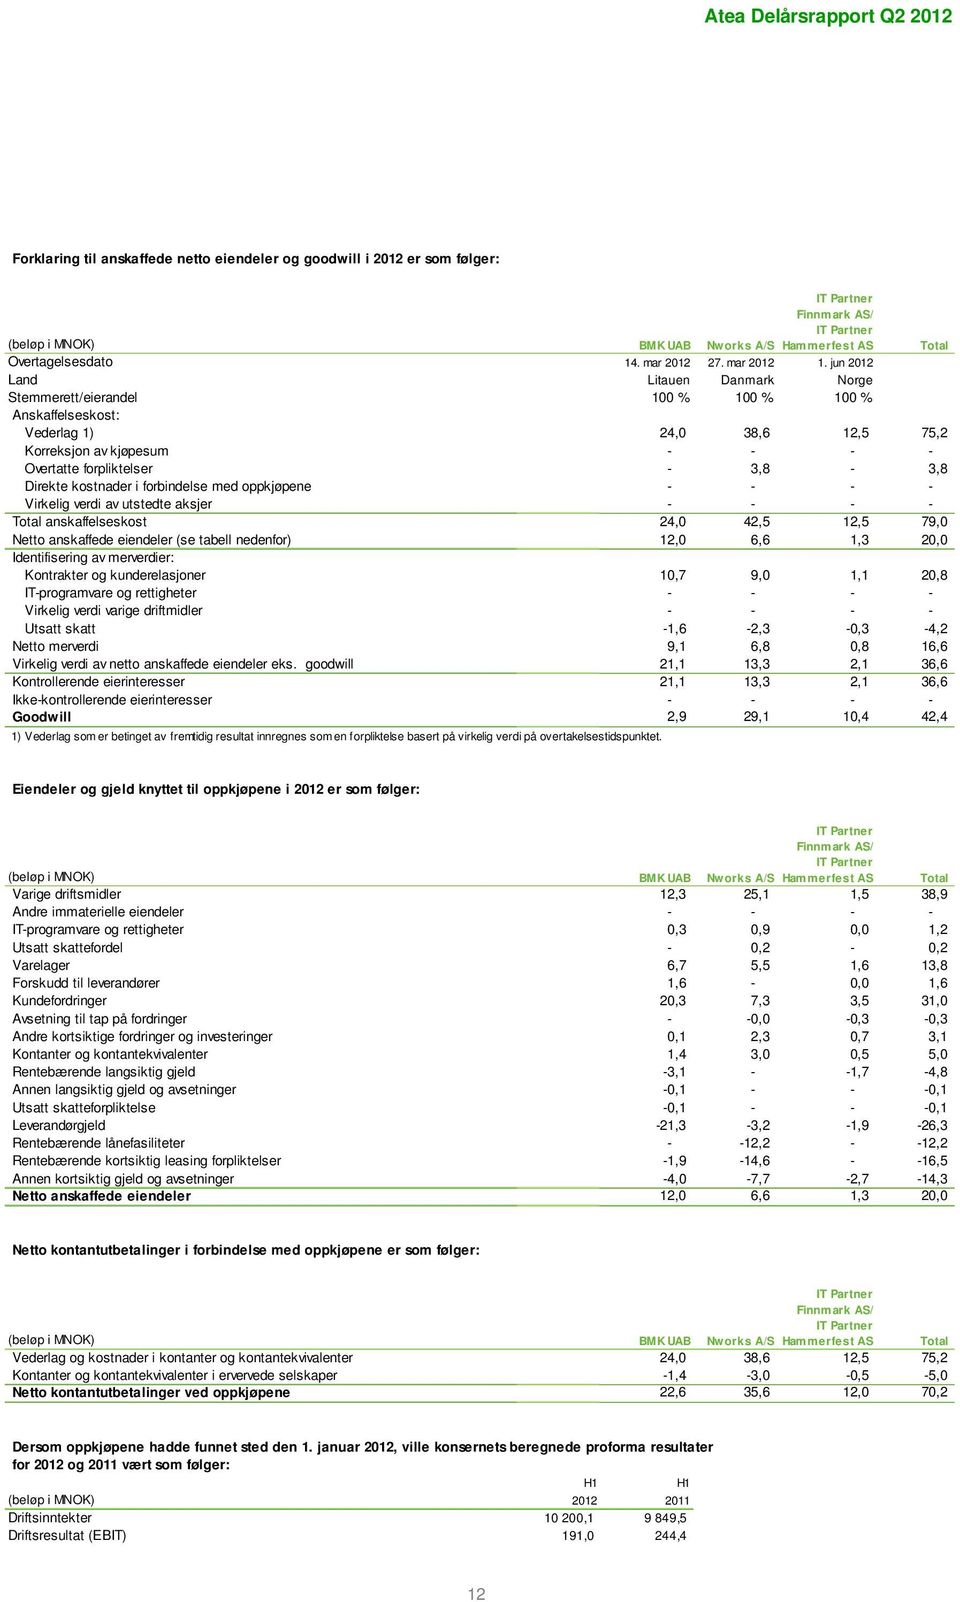 jun 2012 Land Litauen Danmark Norge Stemmerett/eierandel 100 % 100 % 100 % Anskaffelseskost: Vederlag 1) 24,0 38,6 12,5 75,2 Korreksjon av kjøpesum - - - - Overtatte forpliktelser - 3,8-3,8 Direkte